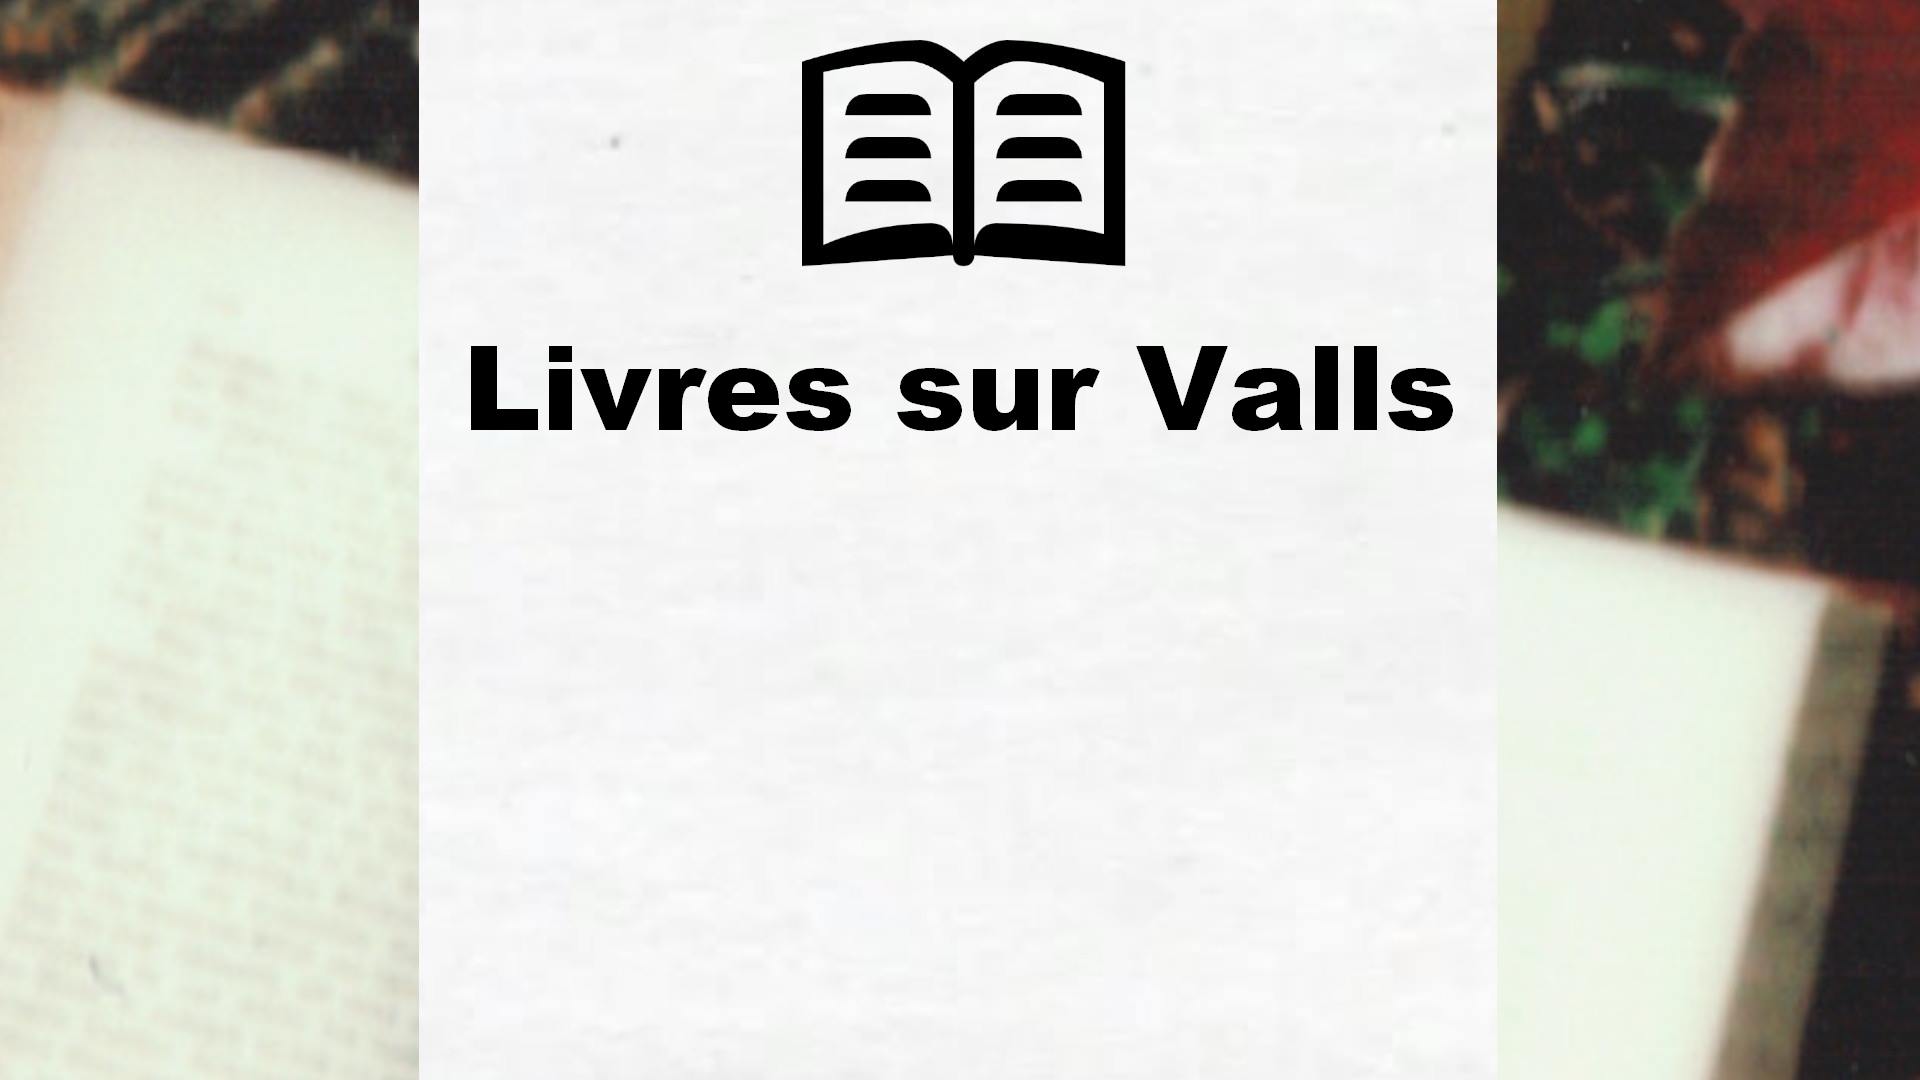 Livres sur Valls